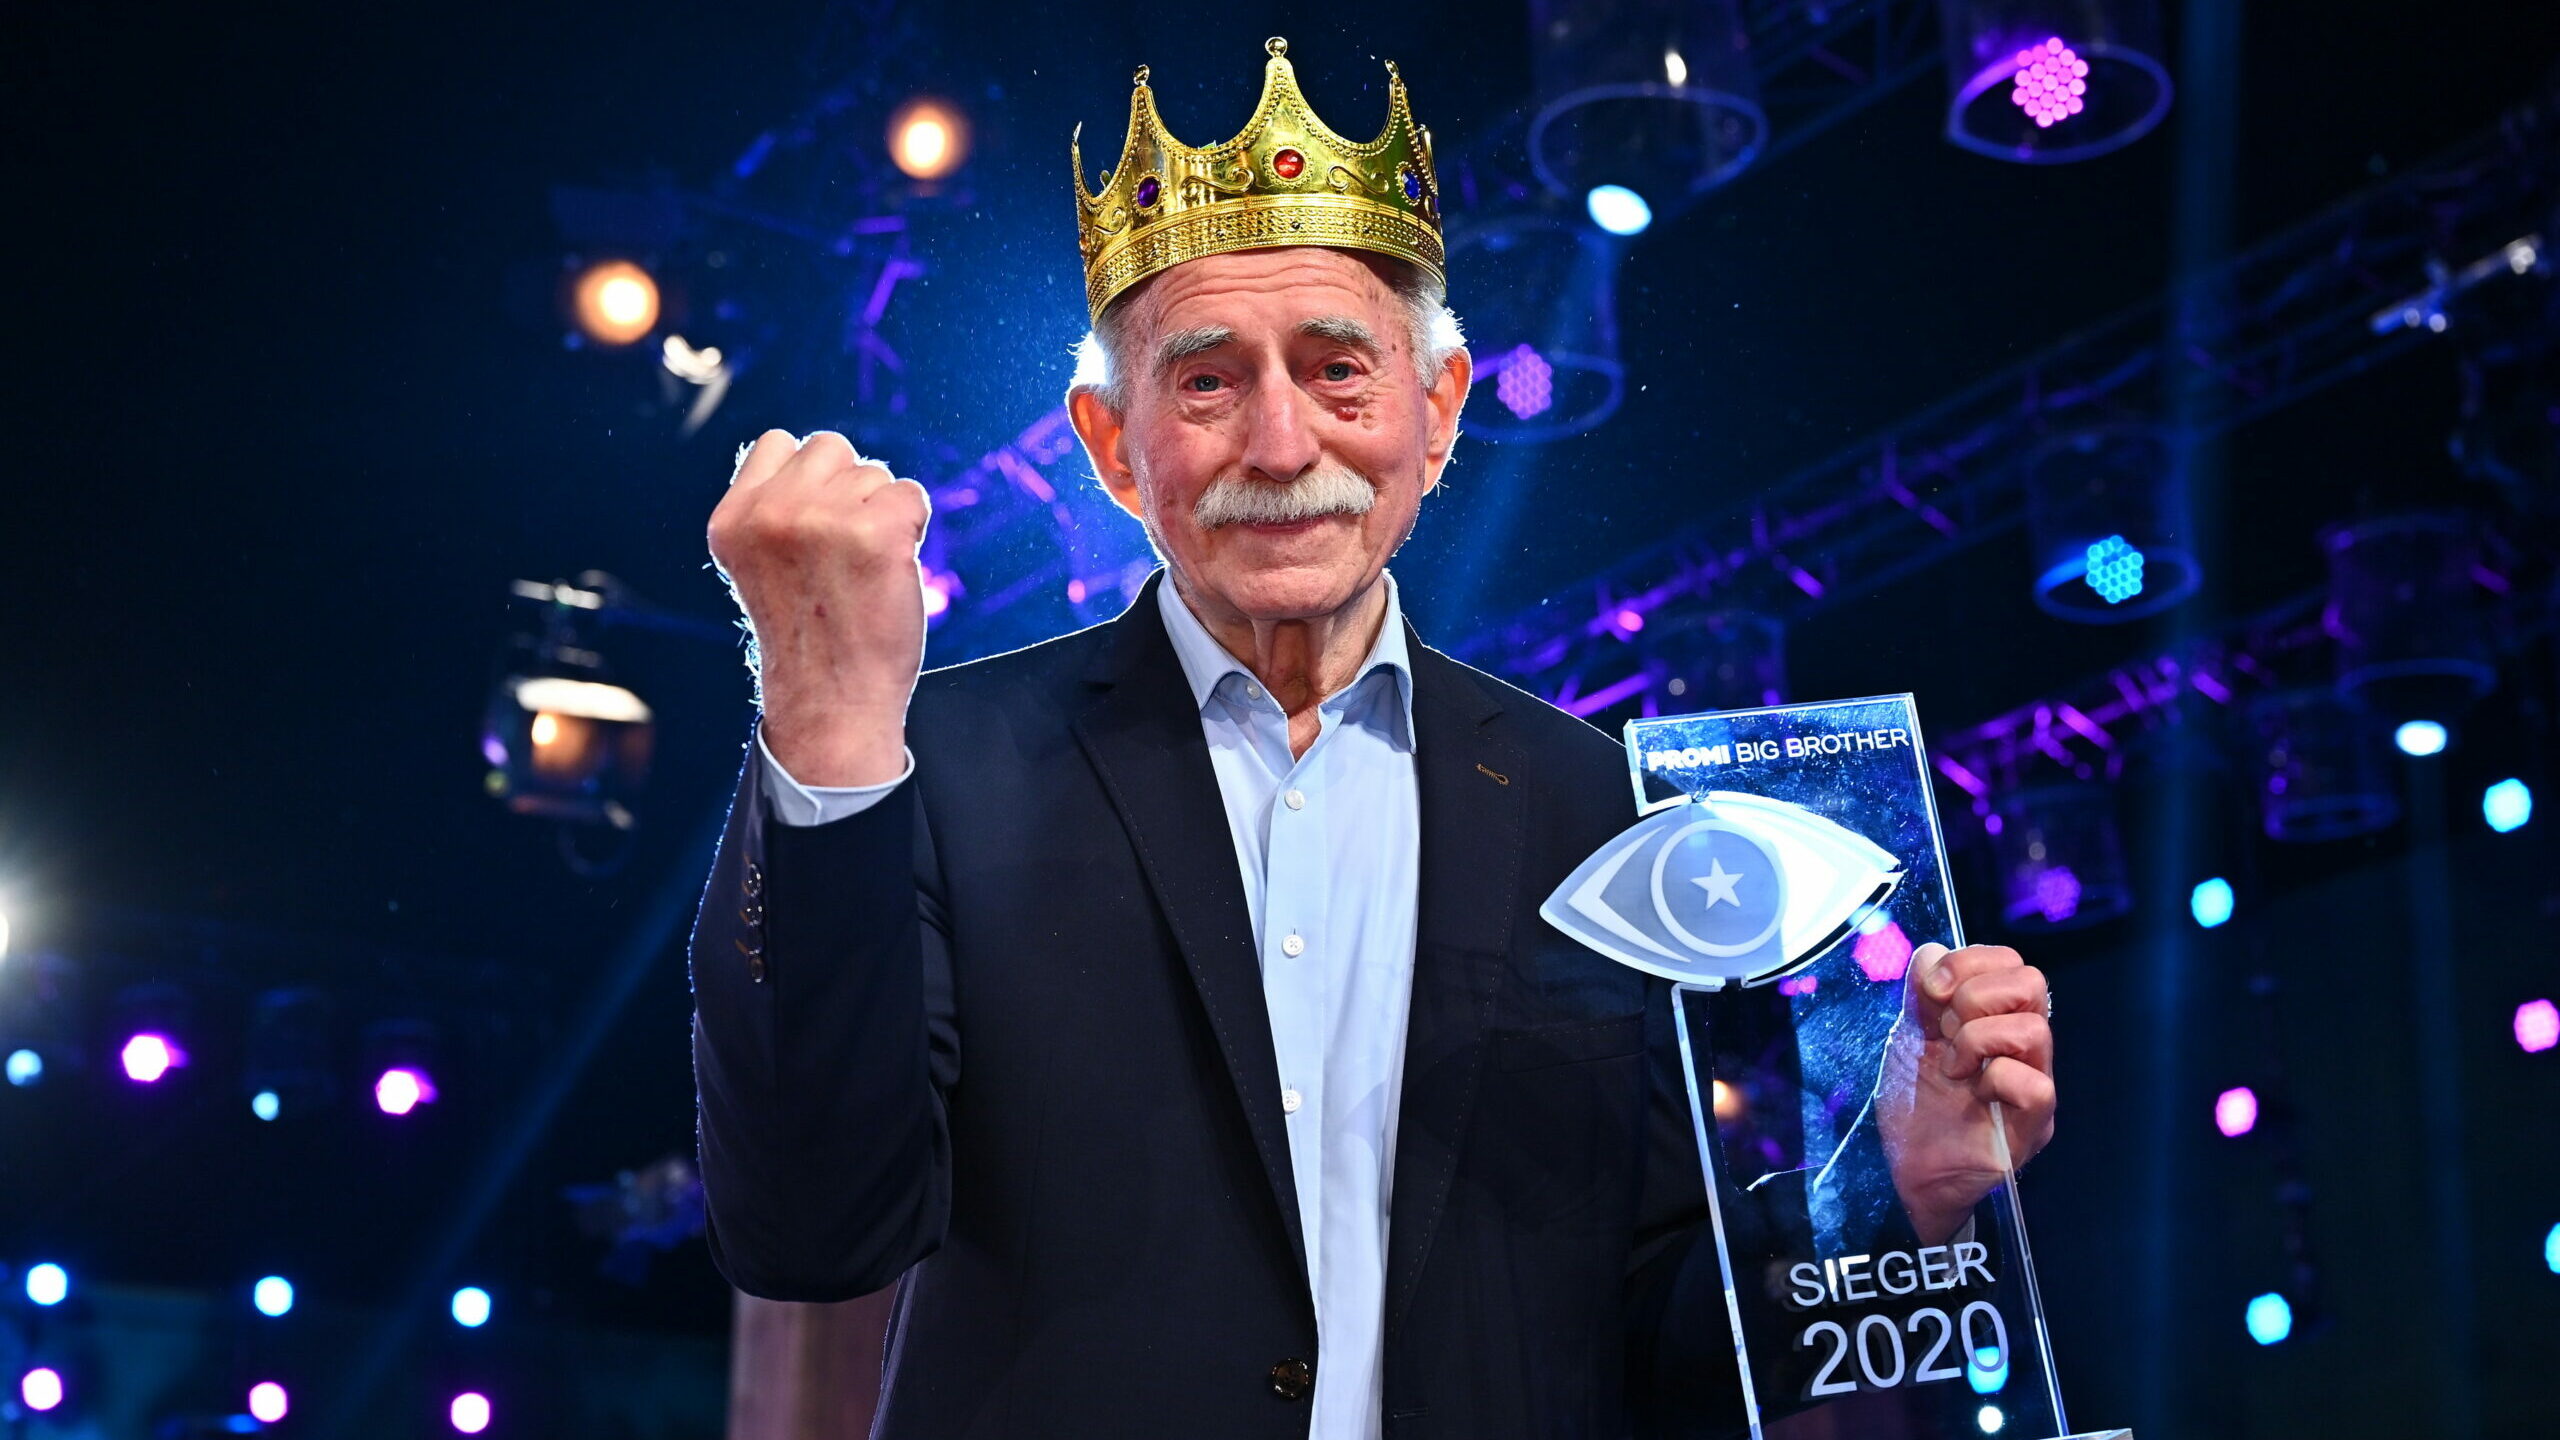 Promi Big Brother 2020 Gewinner: Werner Hansch ist der Sieger von Staffel 8 2